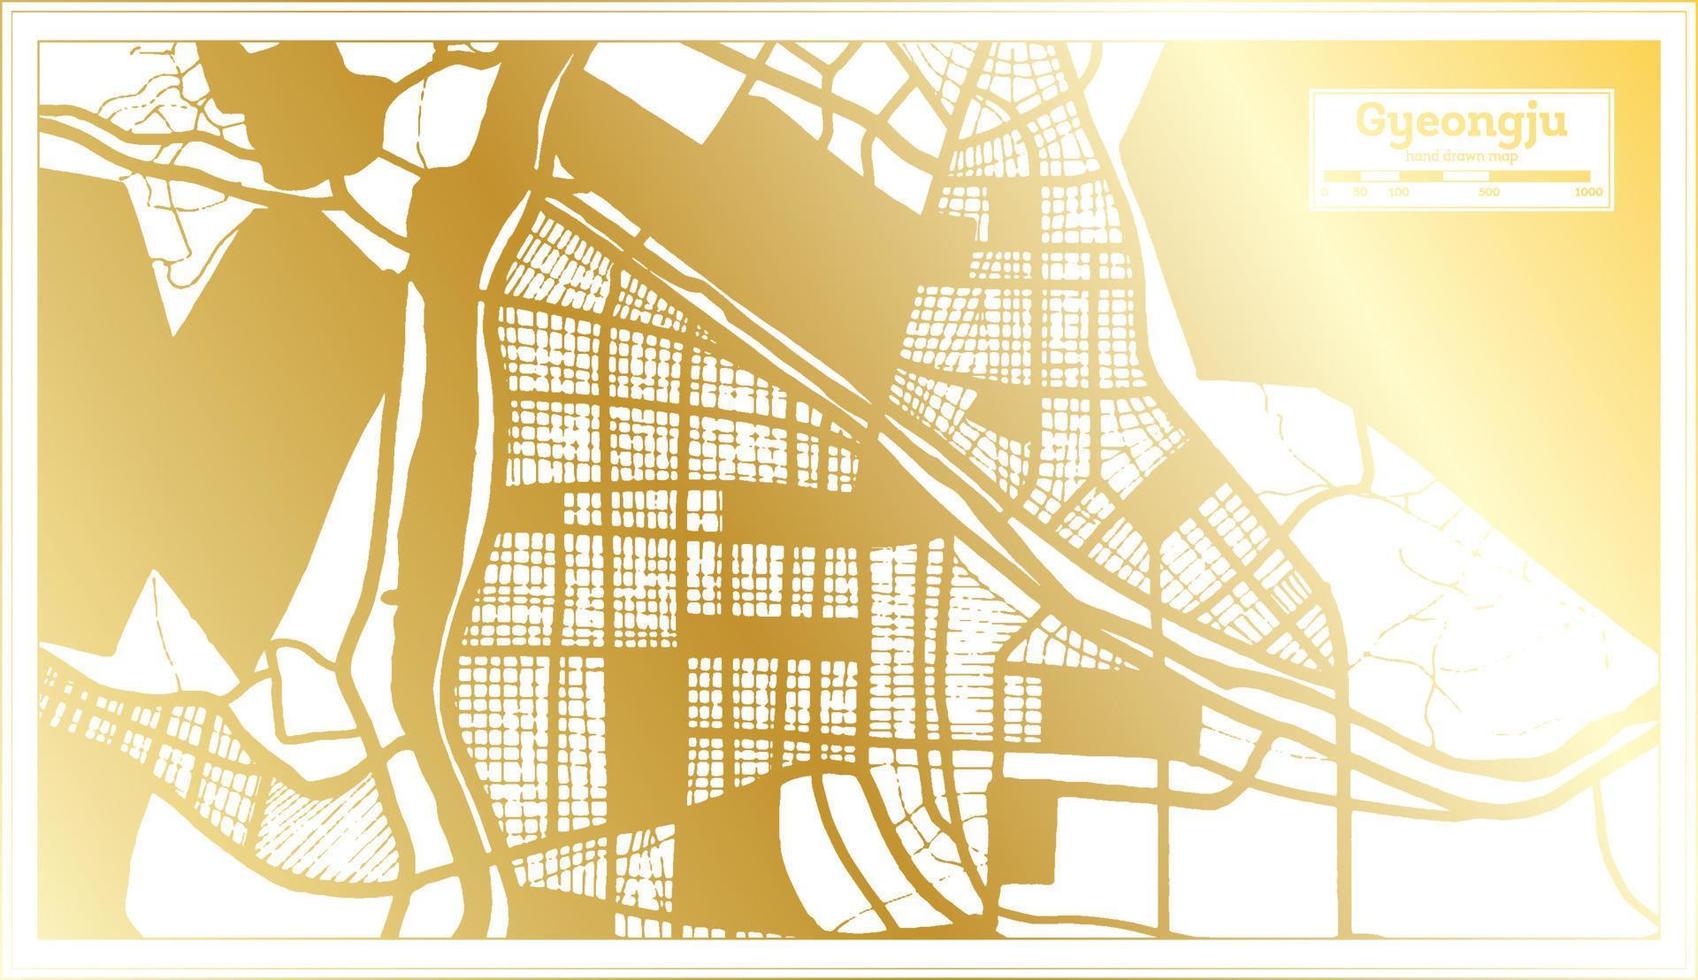 mapa de la ciudad de gyeongju corea del sur en estilo retro en color dorado. esquema del mapa. vector